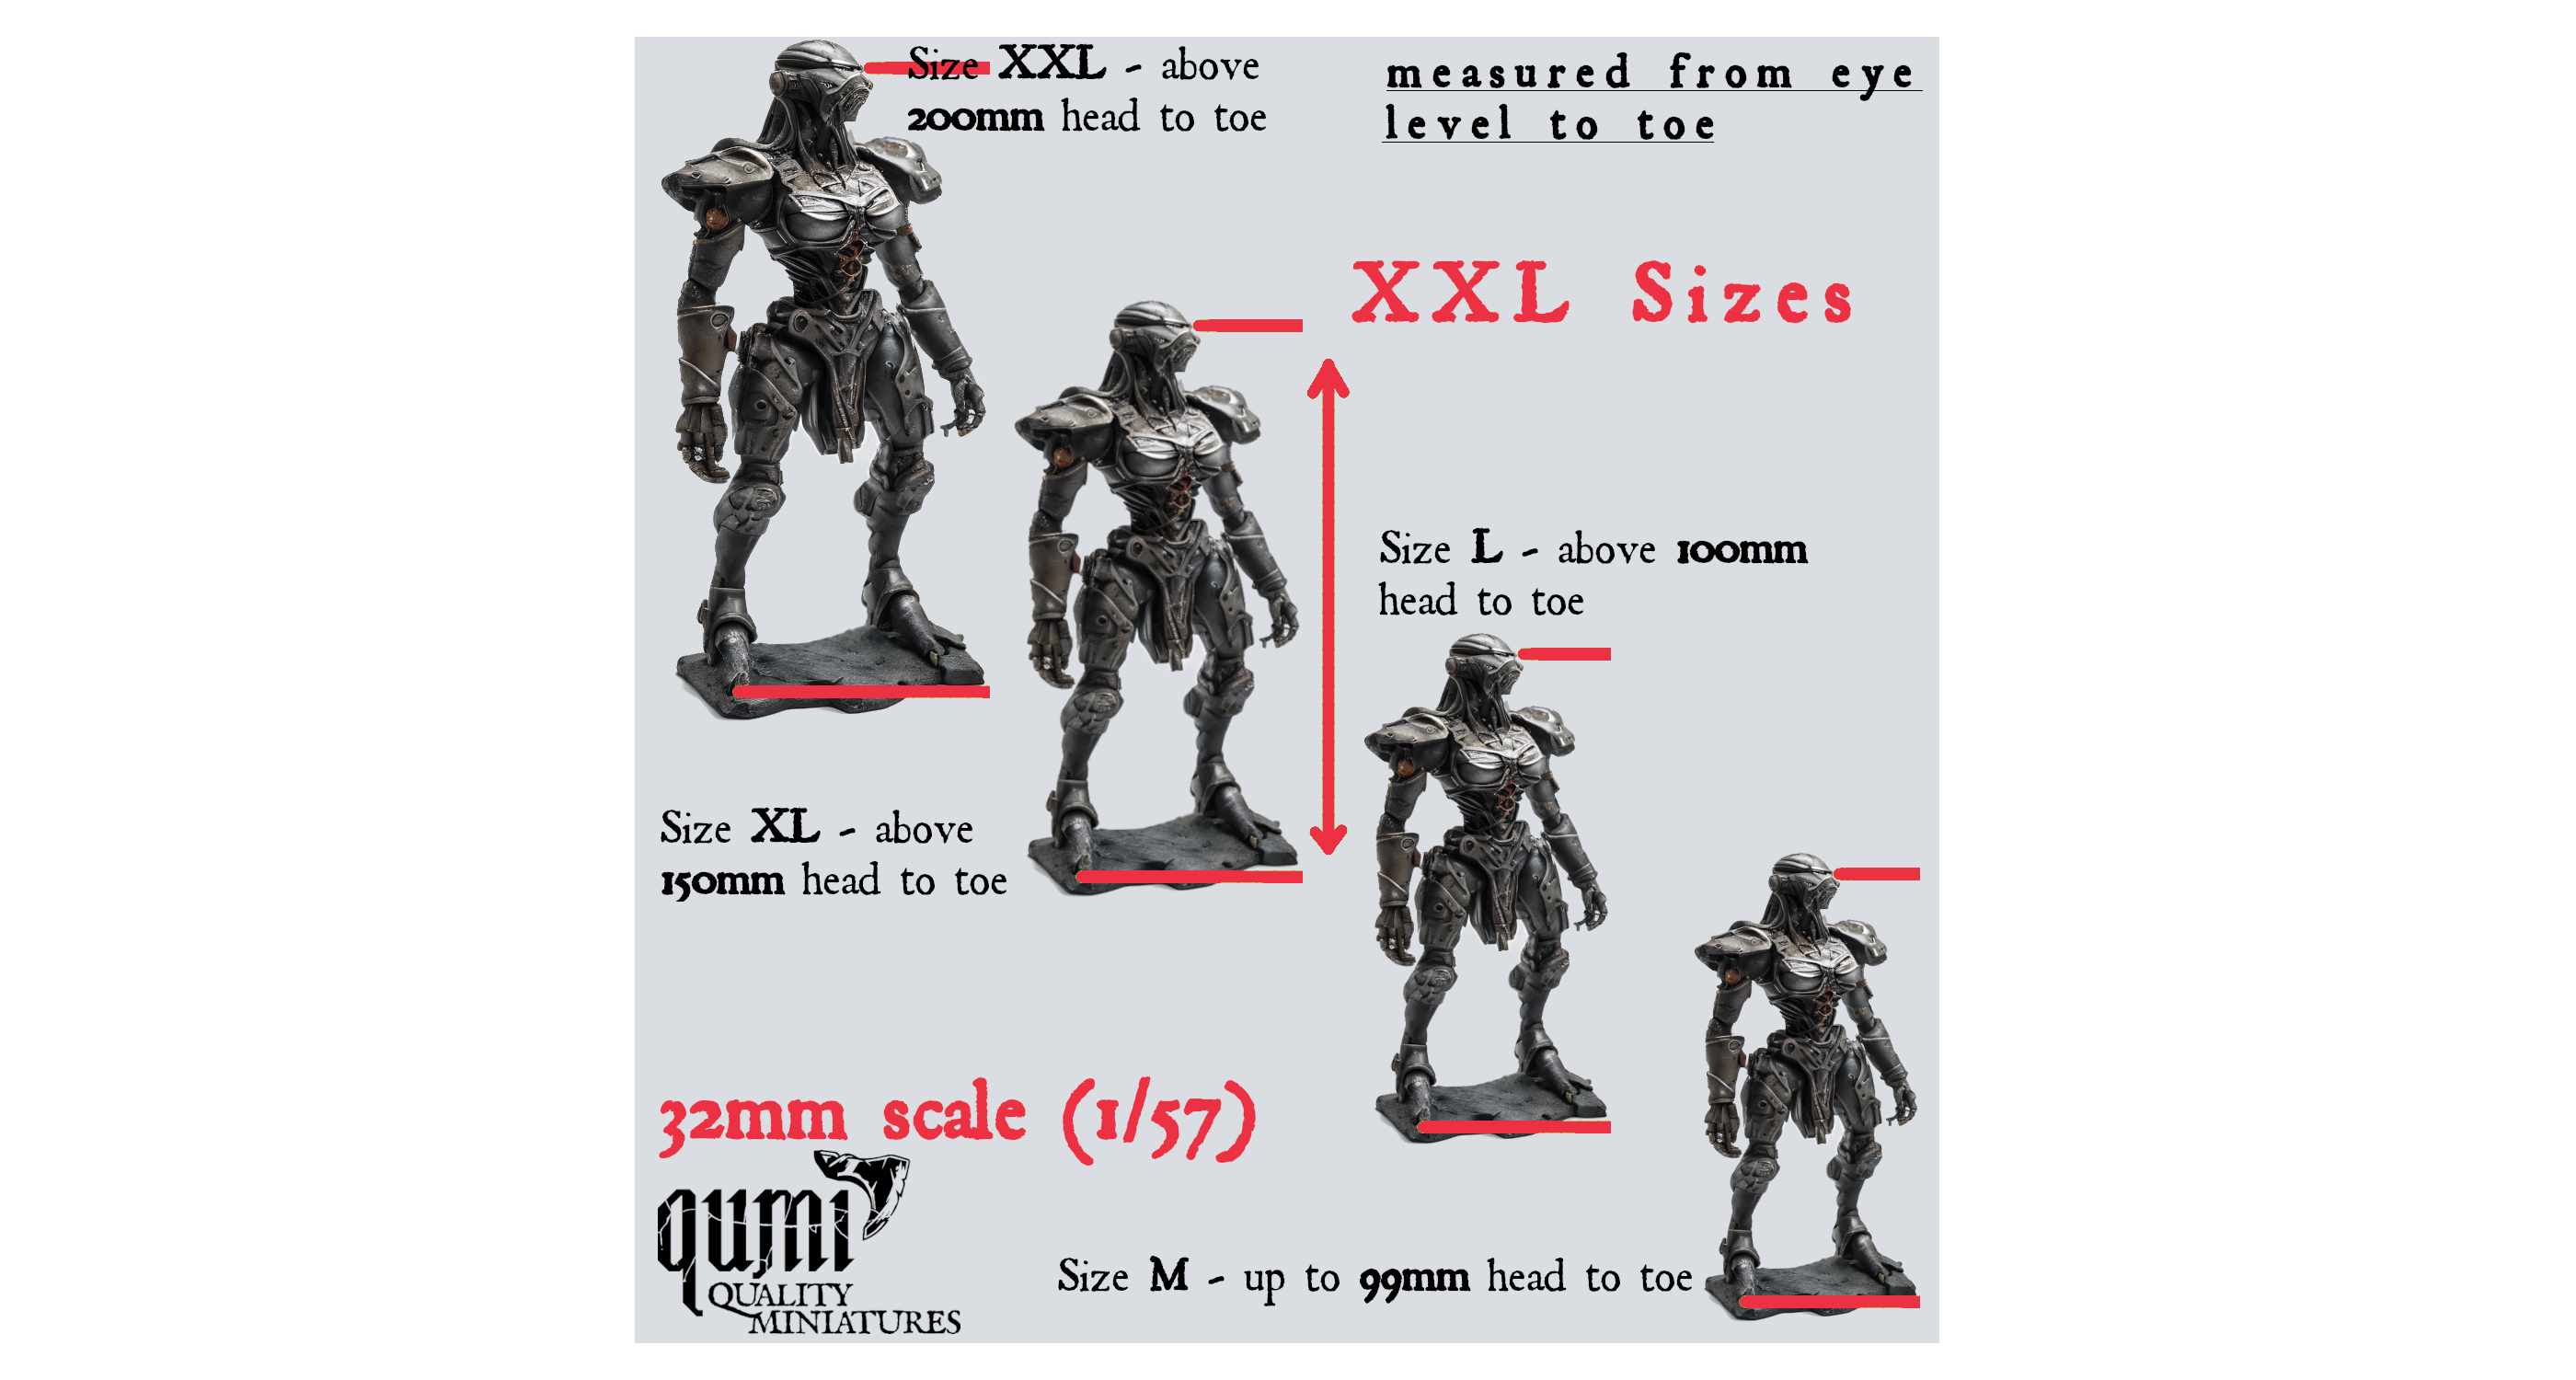 XXL Sizes scale